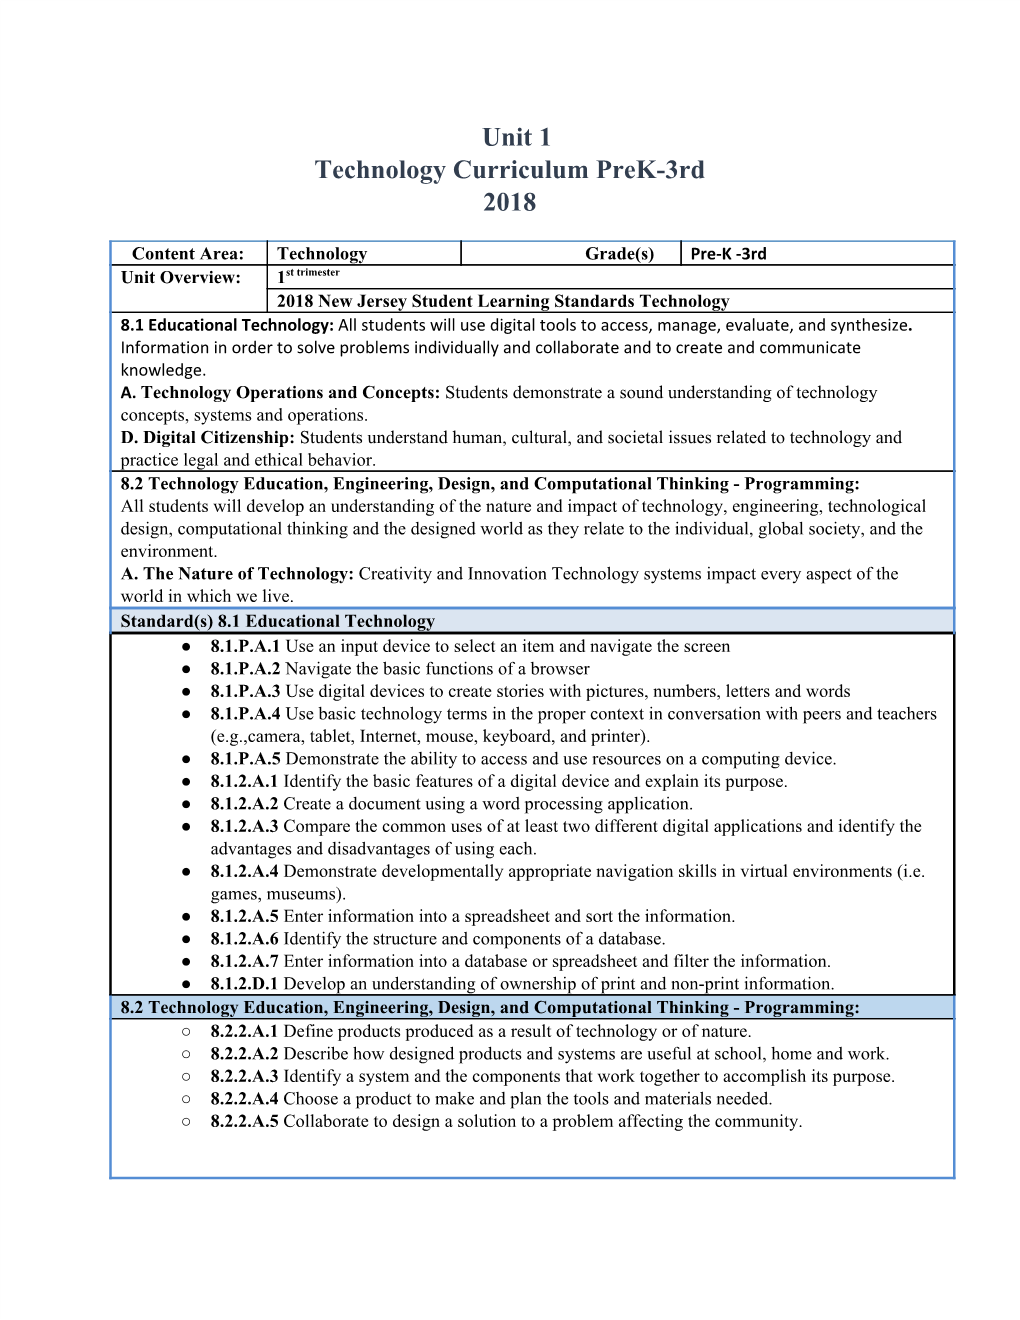 Unit 1 Technology Curriculum Prek-3Rd 2018